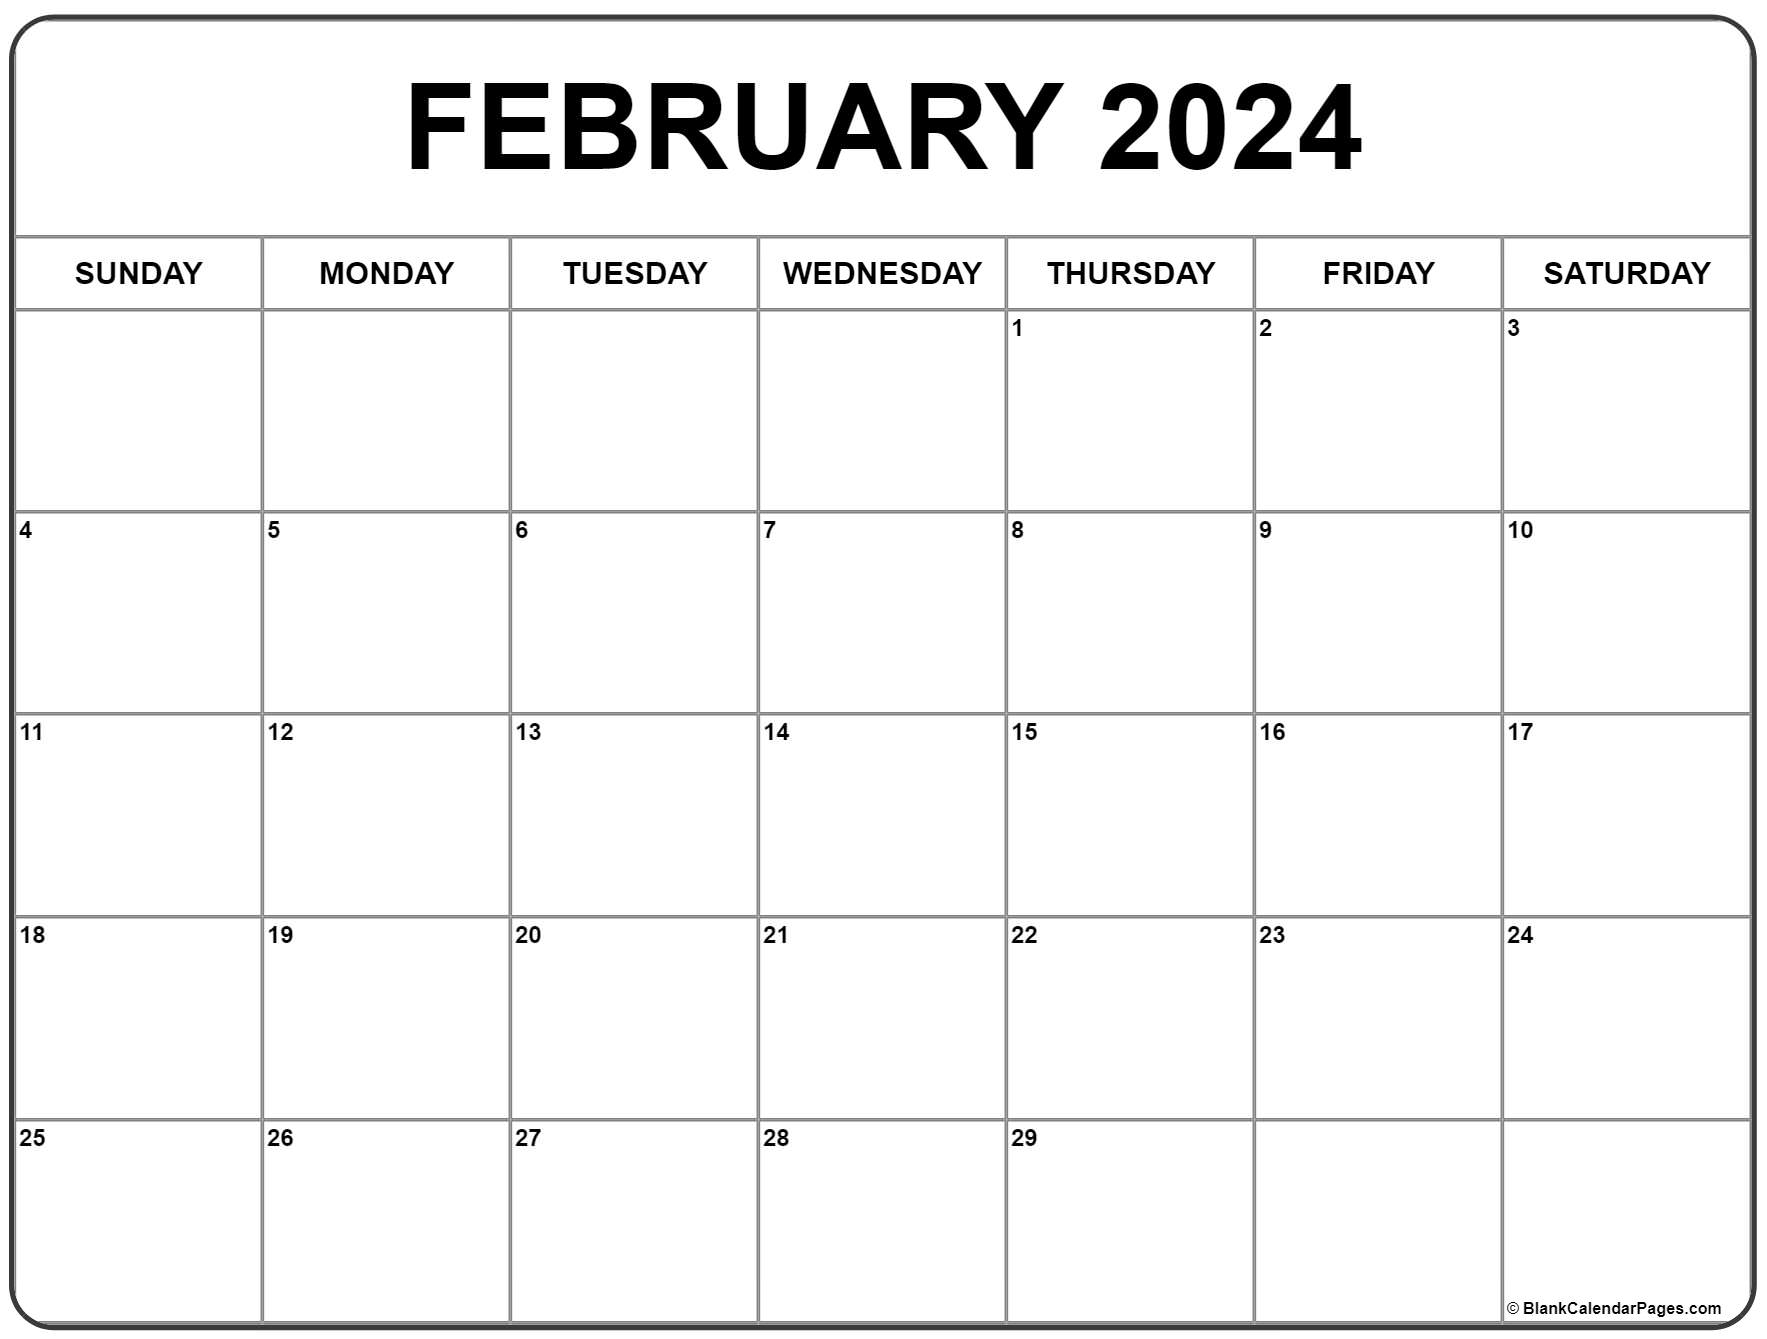 February 2024 Calendar | Free Printable Calendar for Free-Printable-Calendar February 2024